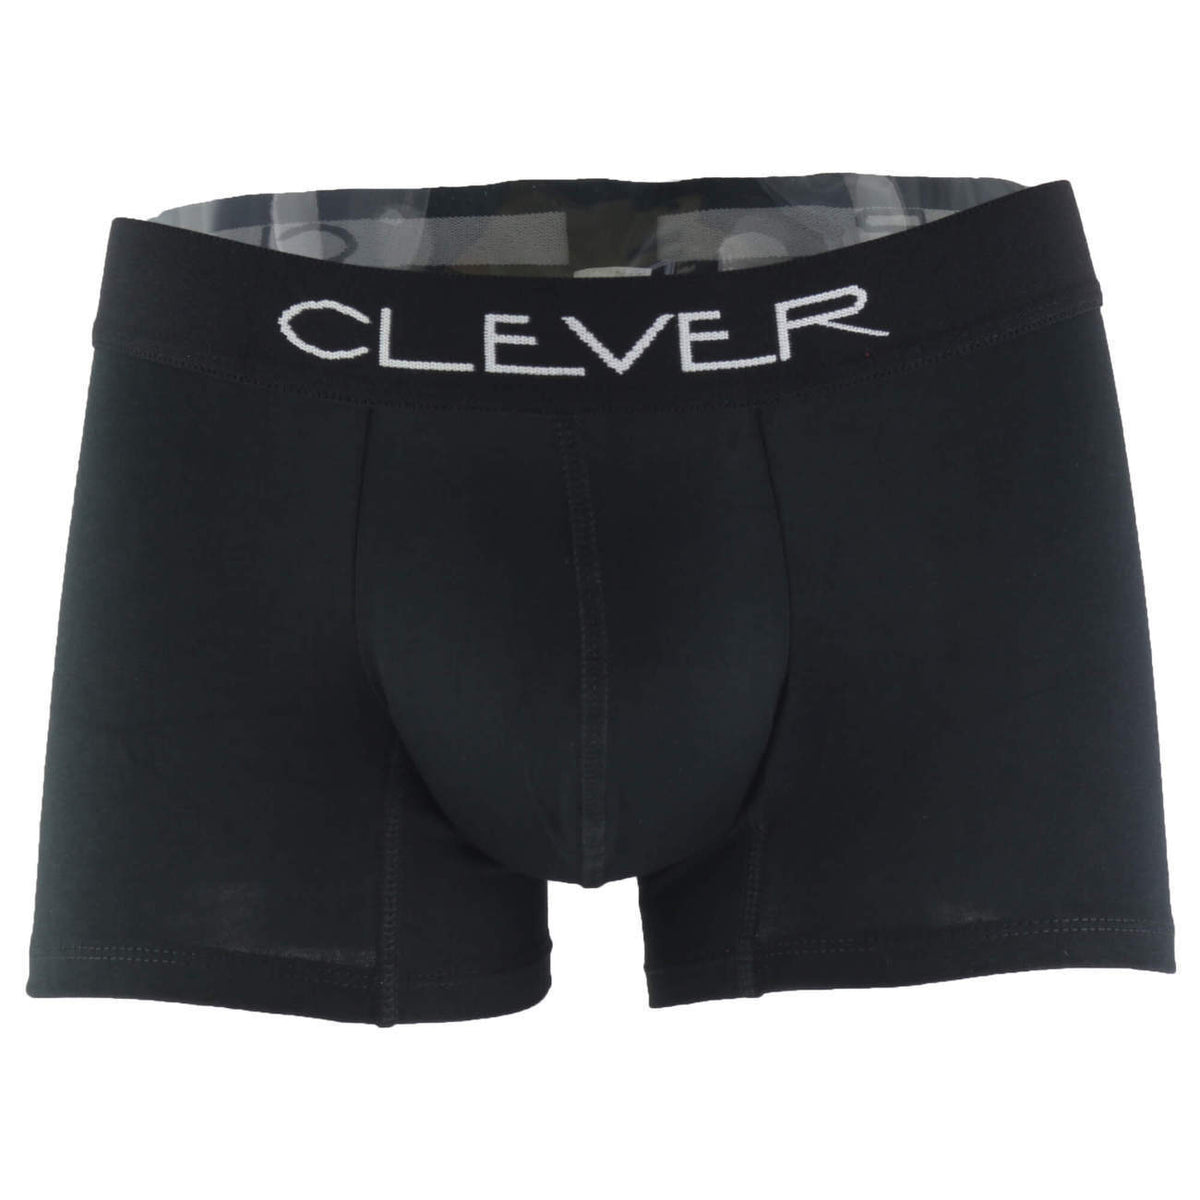 Clever Underwear Basic Boxer | Shop MensUnderwear.io